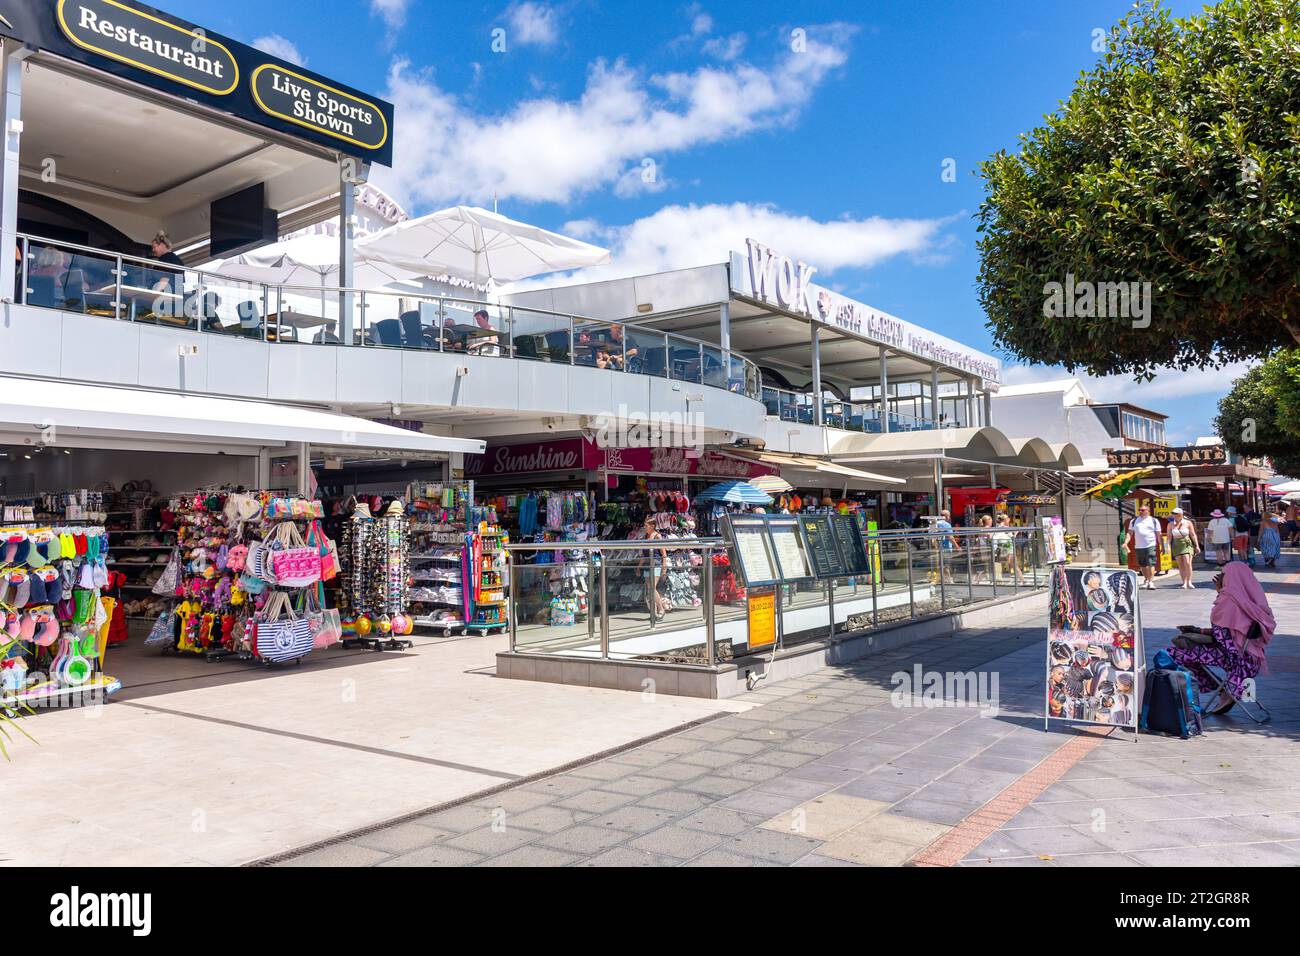 Promenade Geschäfte und Bars, Avenue de Las Playas, Puerto del Carmen, Lanzarote, Kanarische Inseln, Königreich Spanien Stockfoto